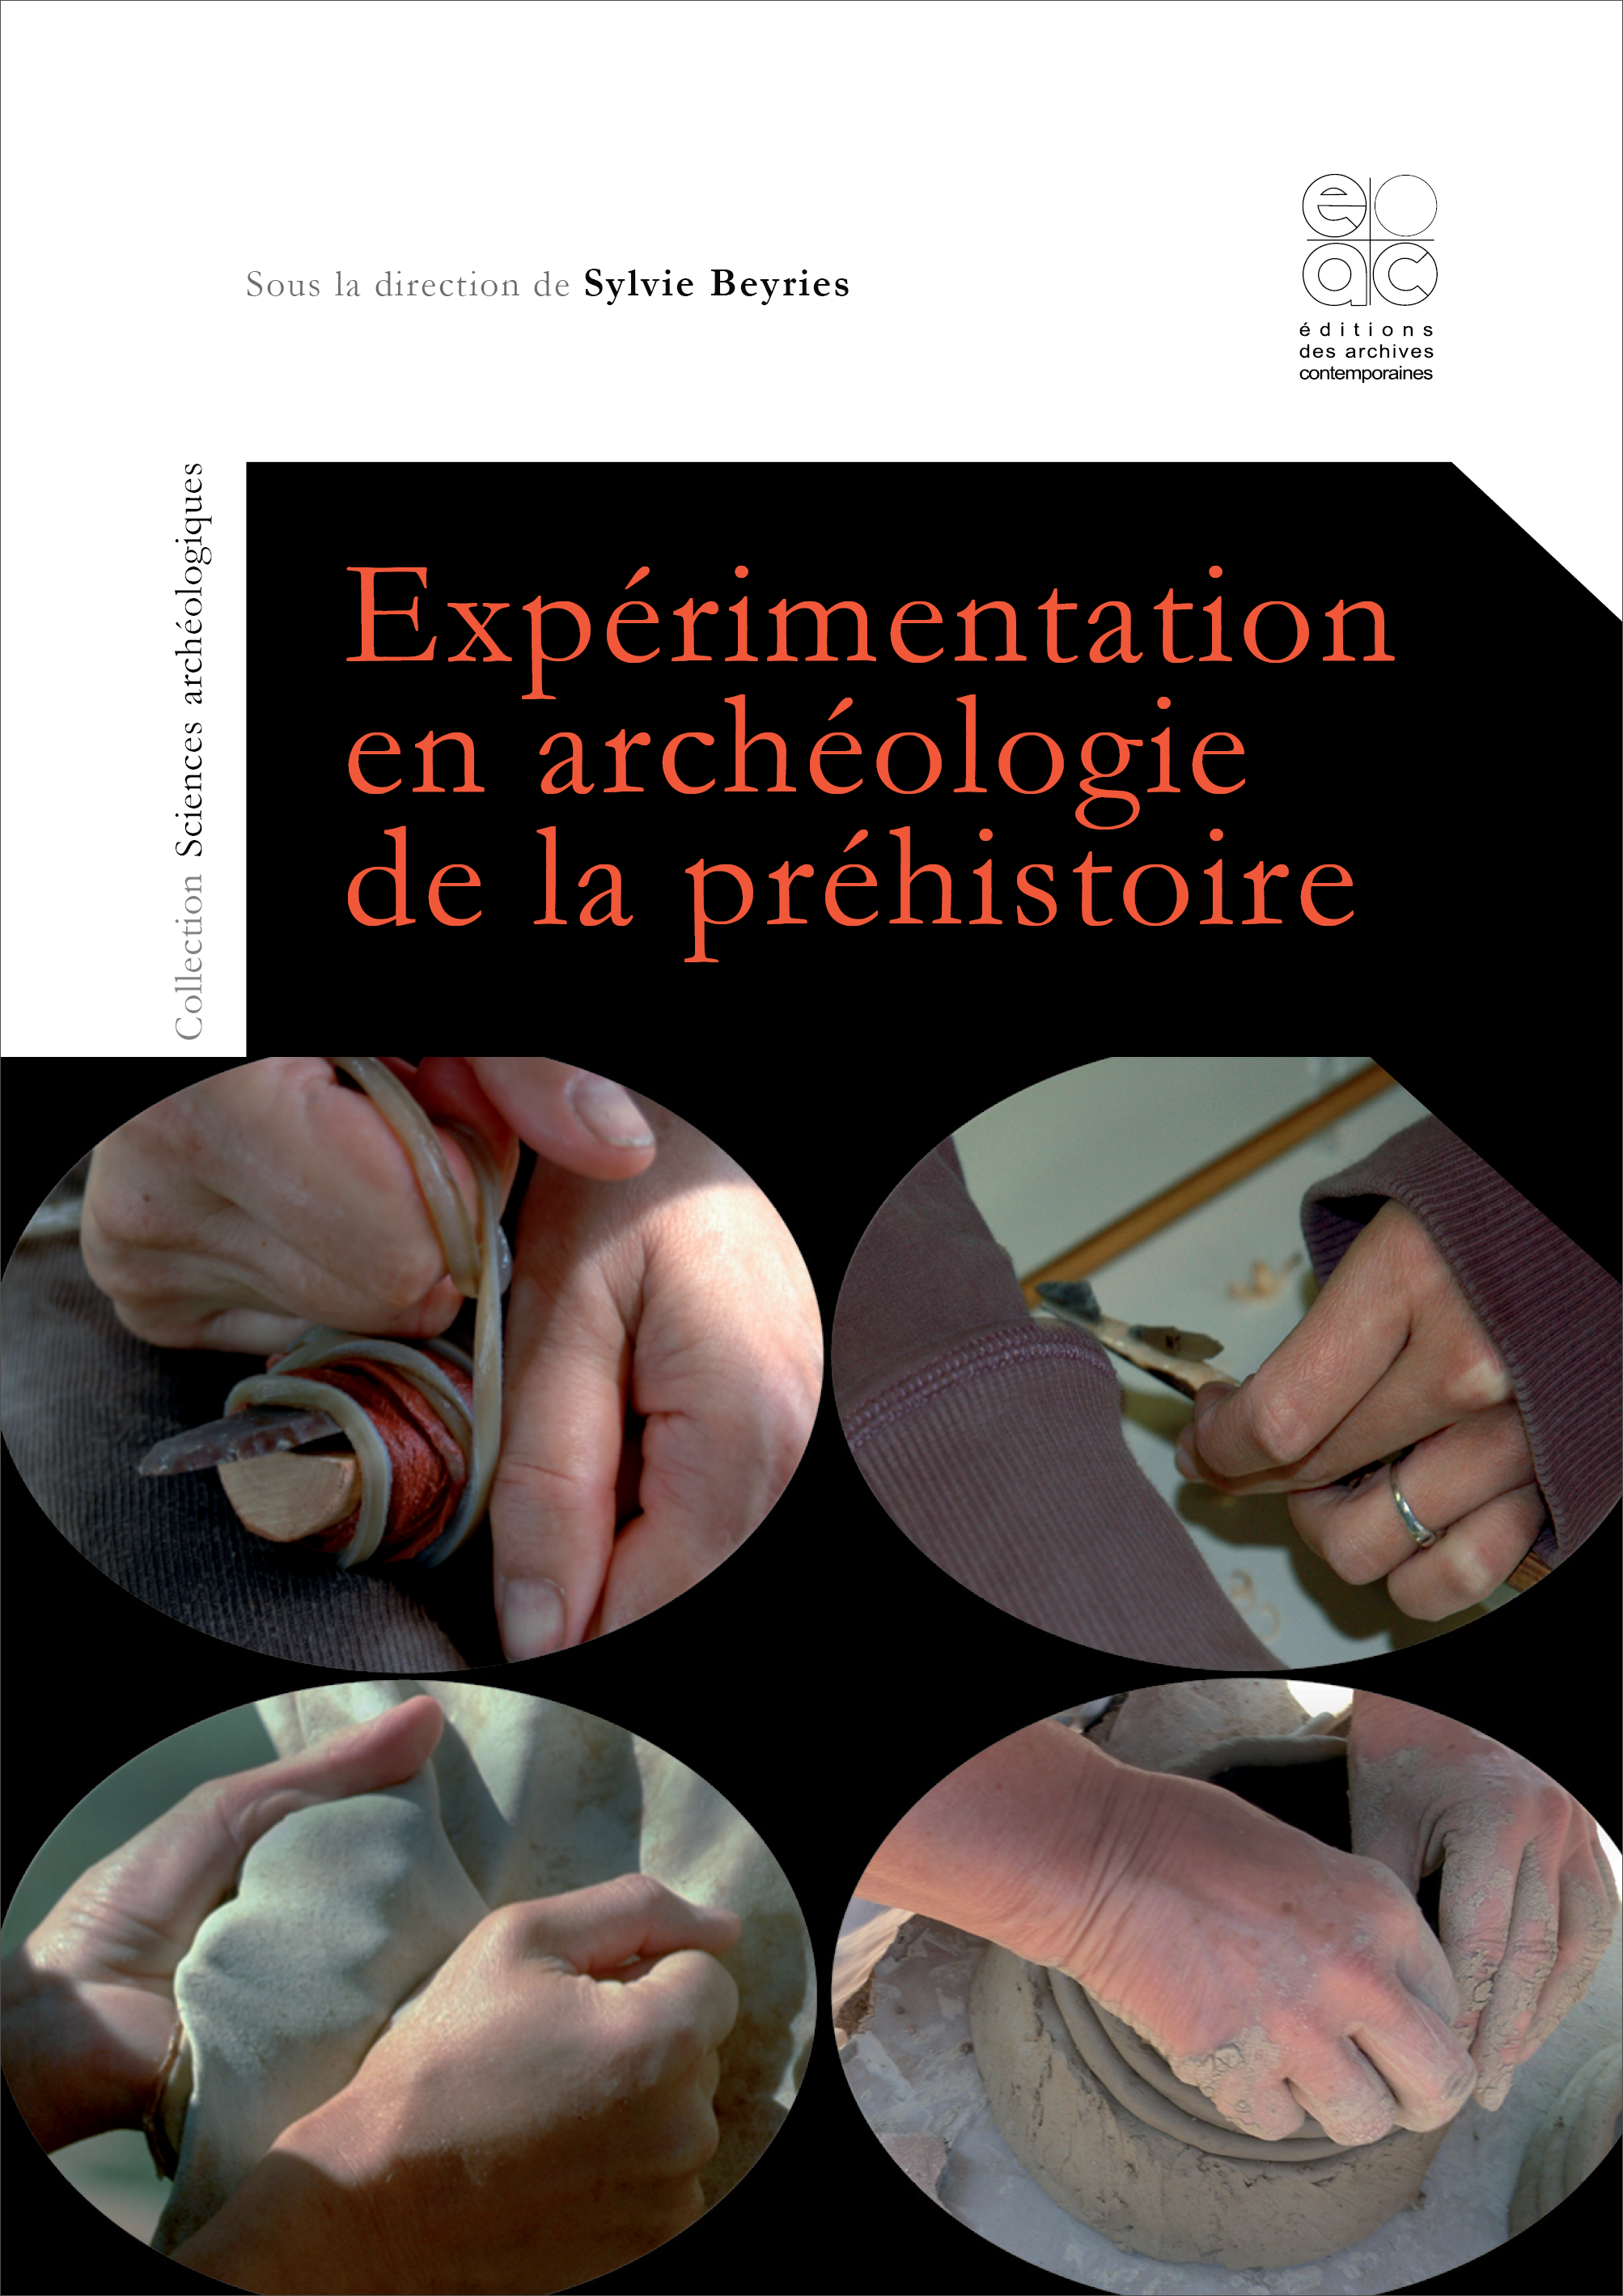 Expérimentation en archéologie de la préhistoire, 2020, 137 p.